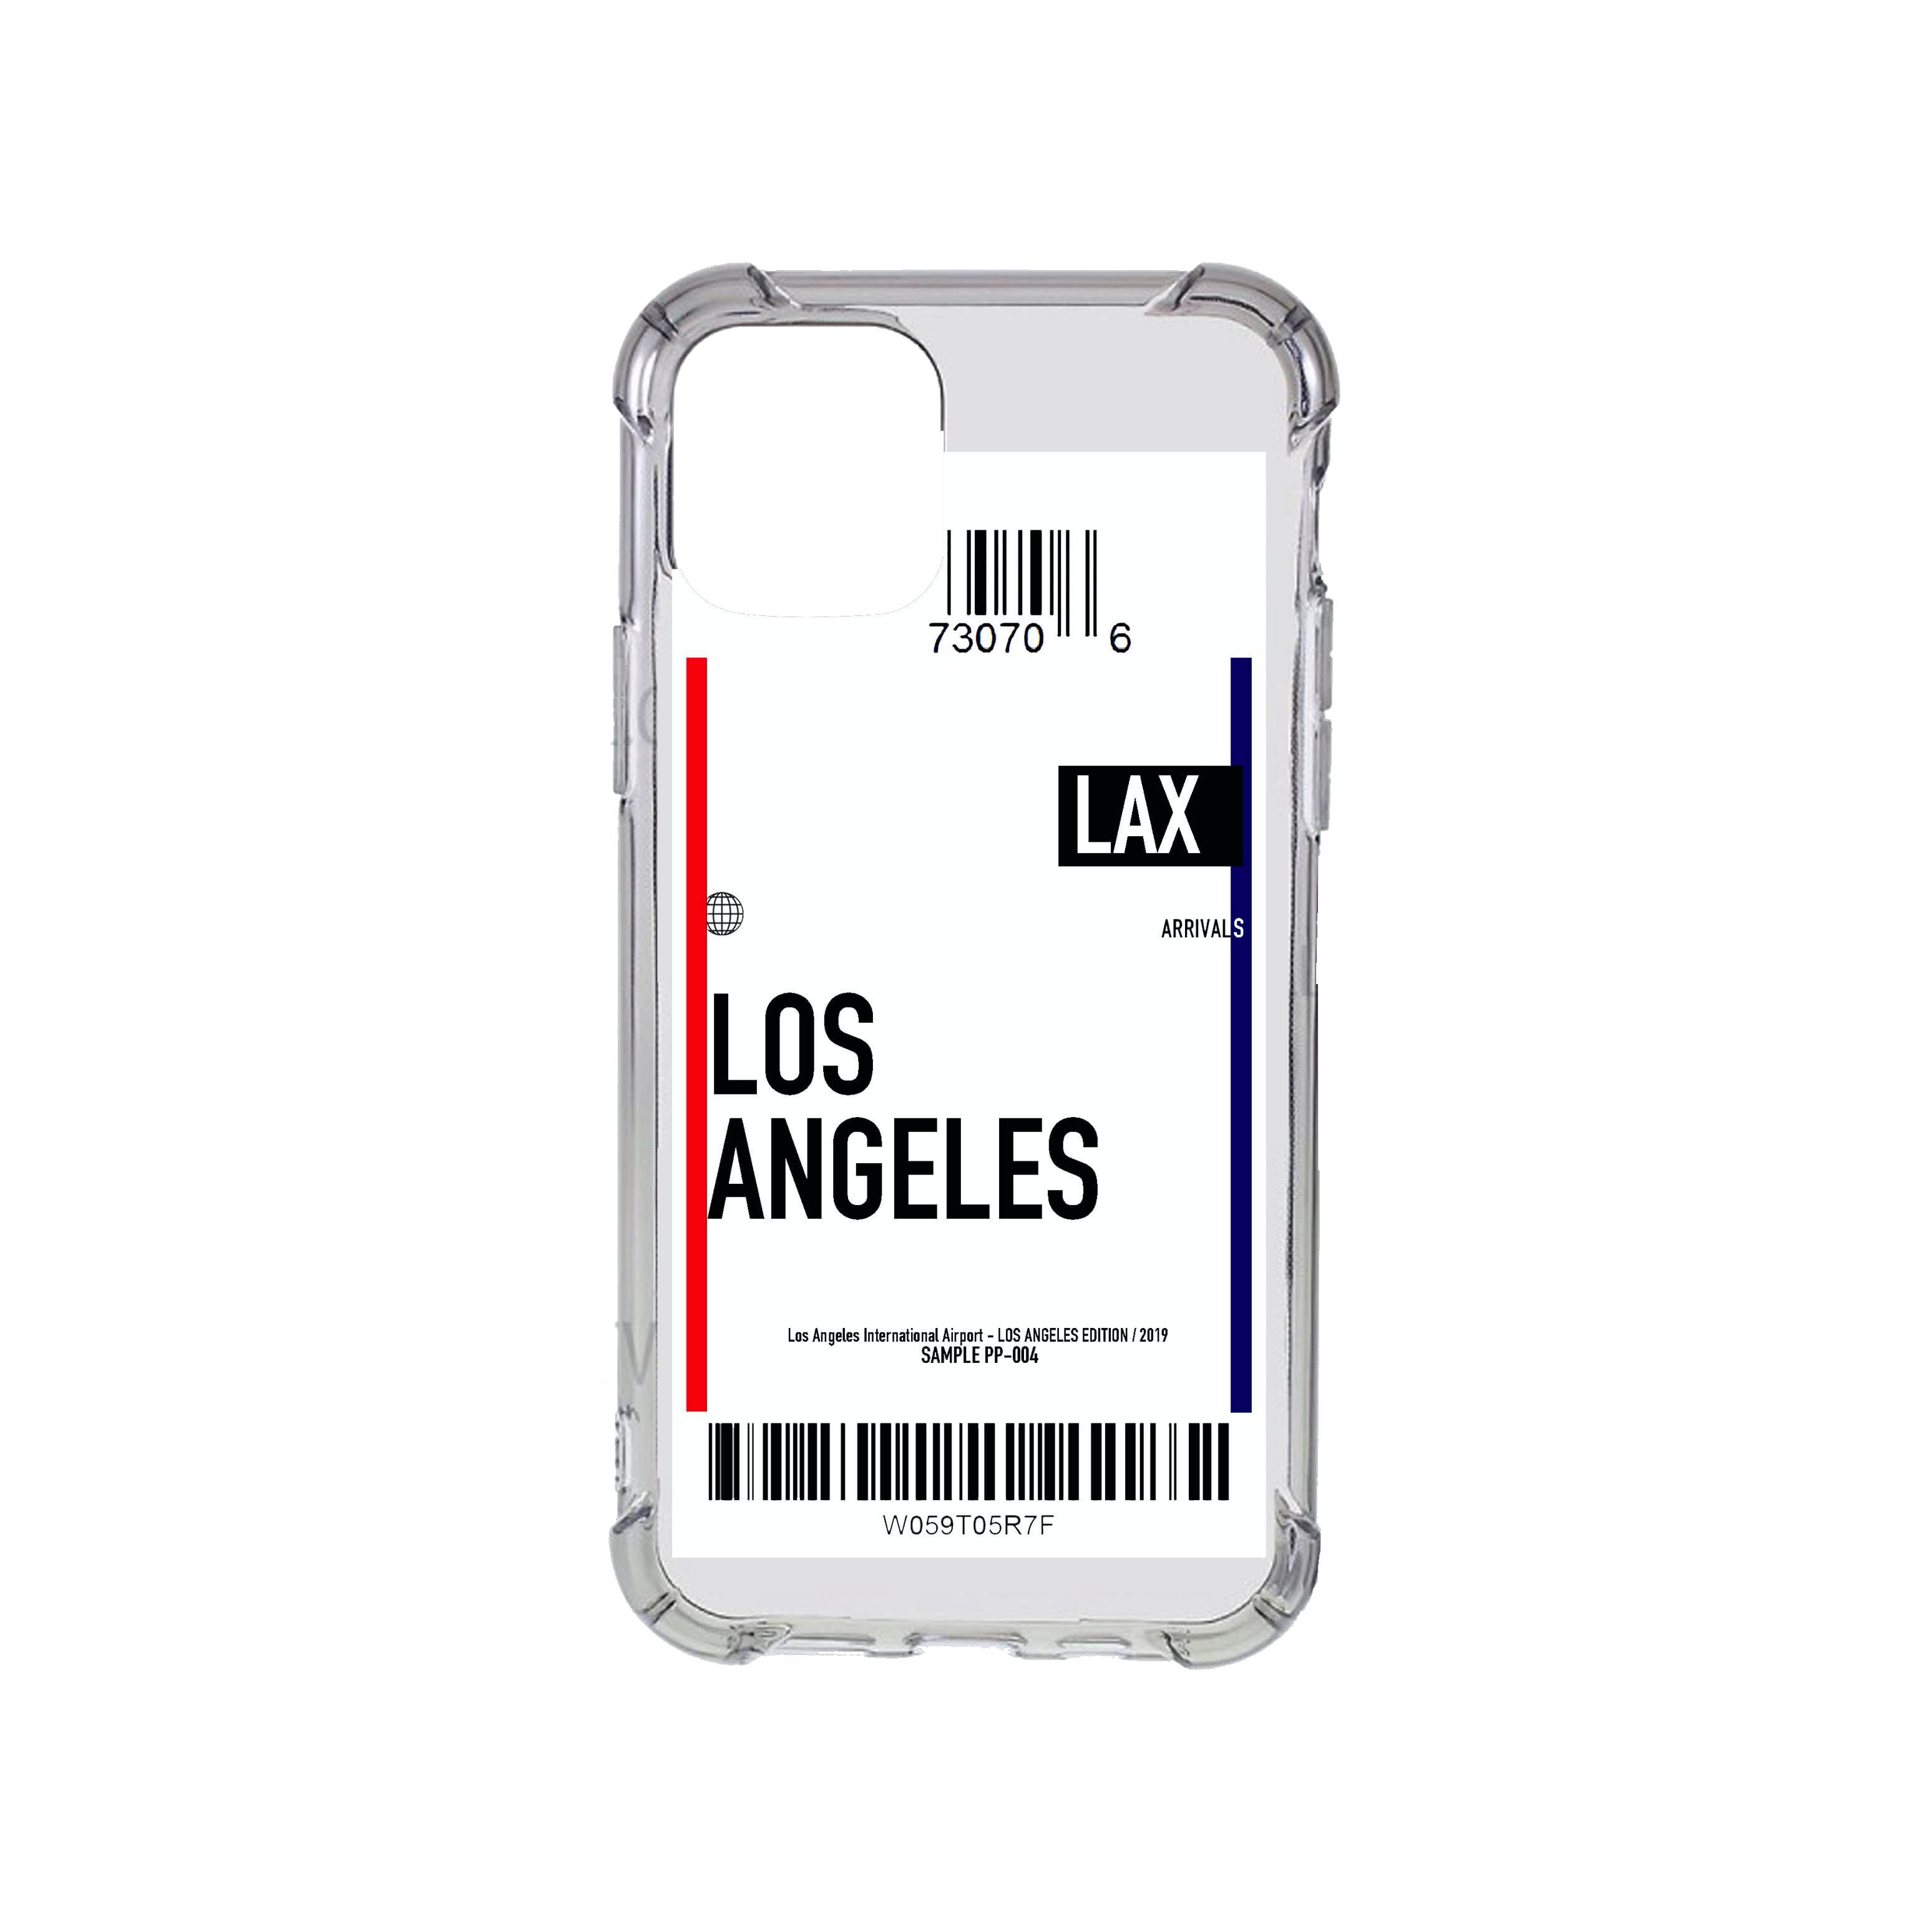 Los Angeles Flight Ticket